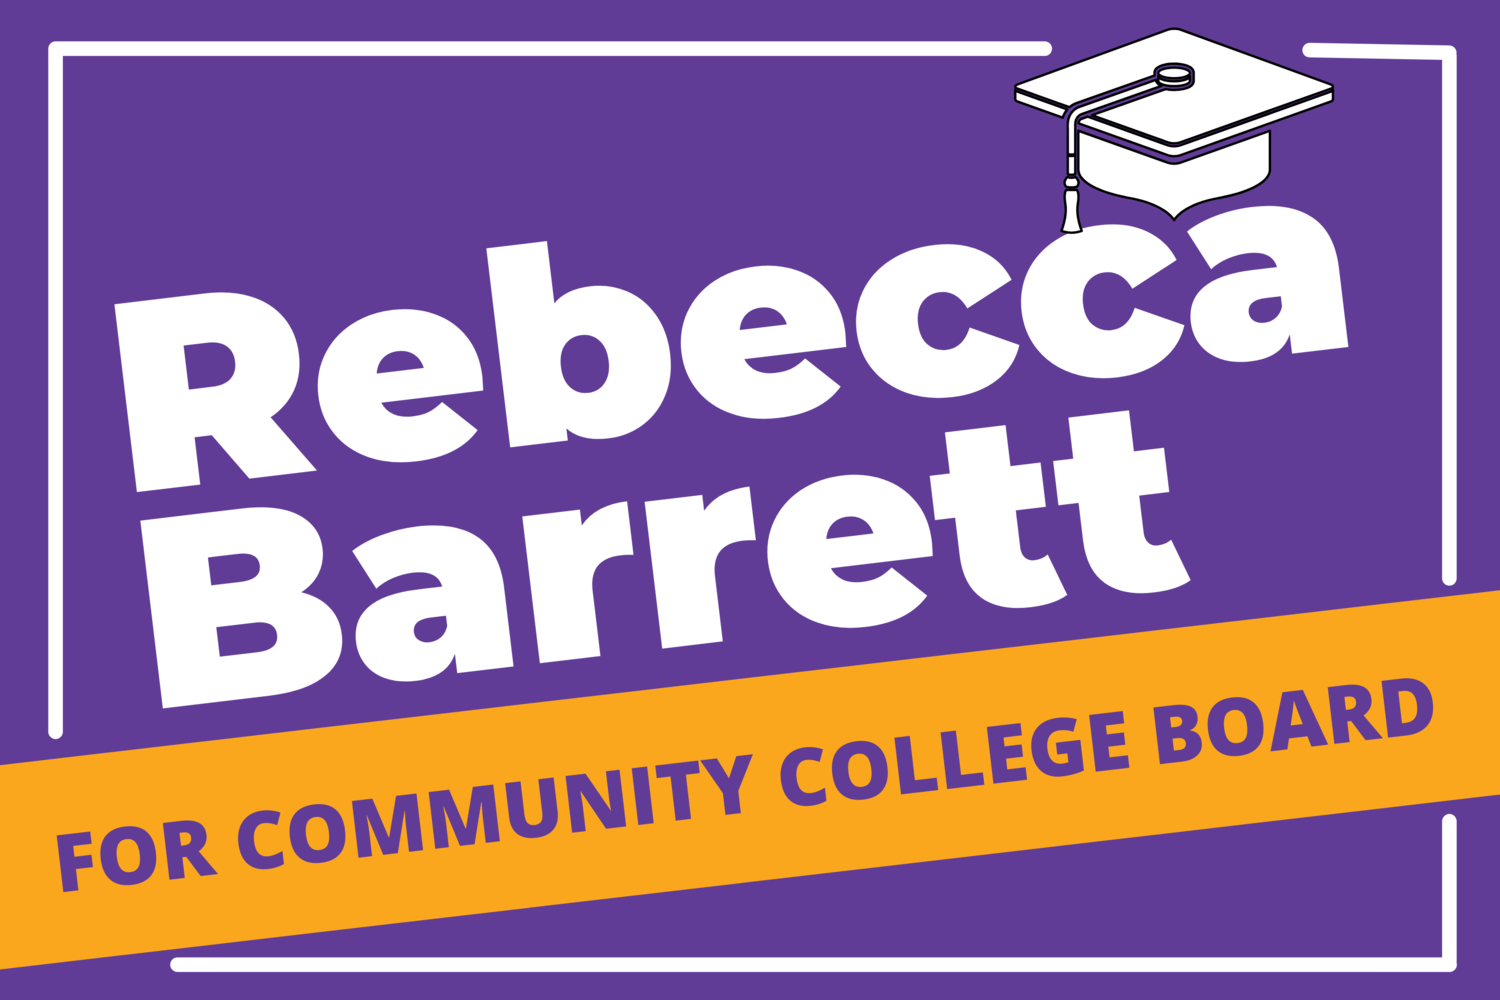 Rebecca Barrett for Community College Board 2022